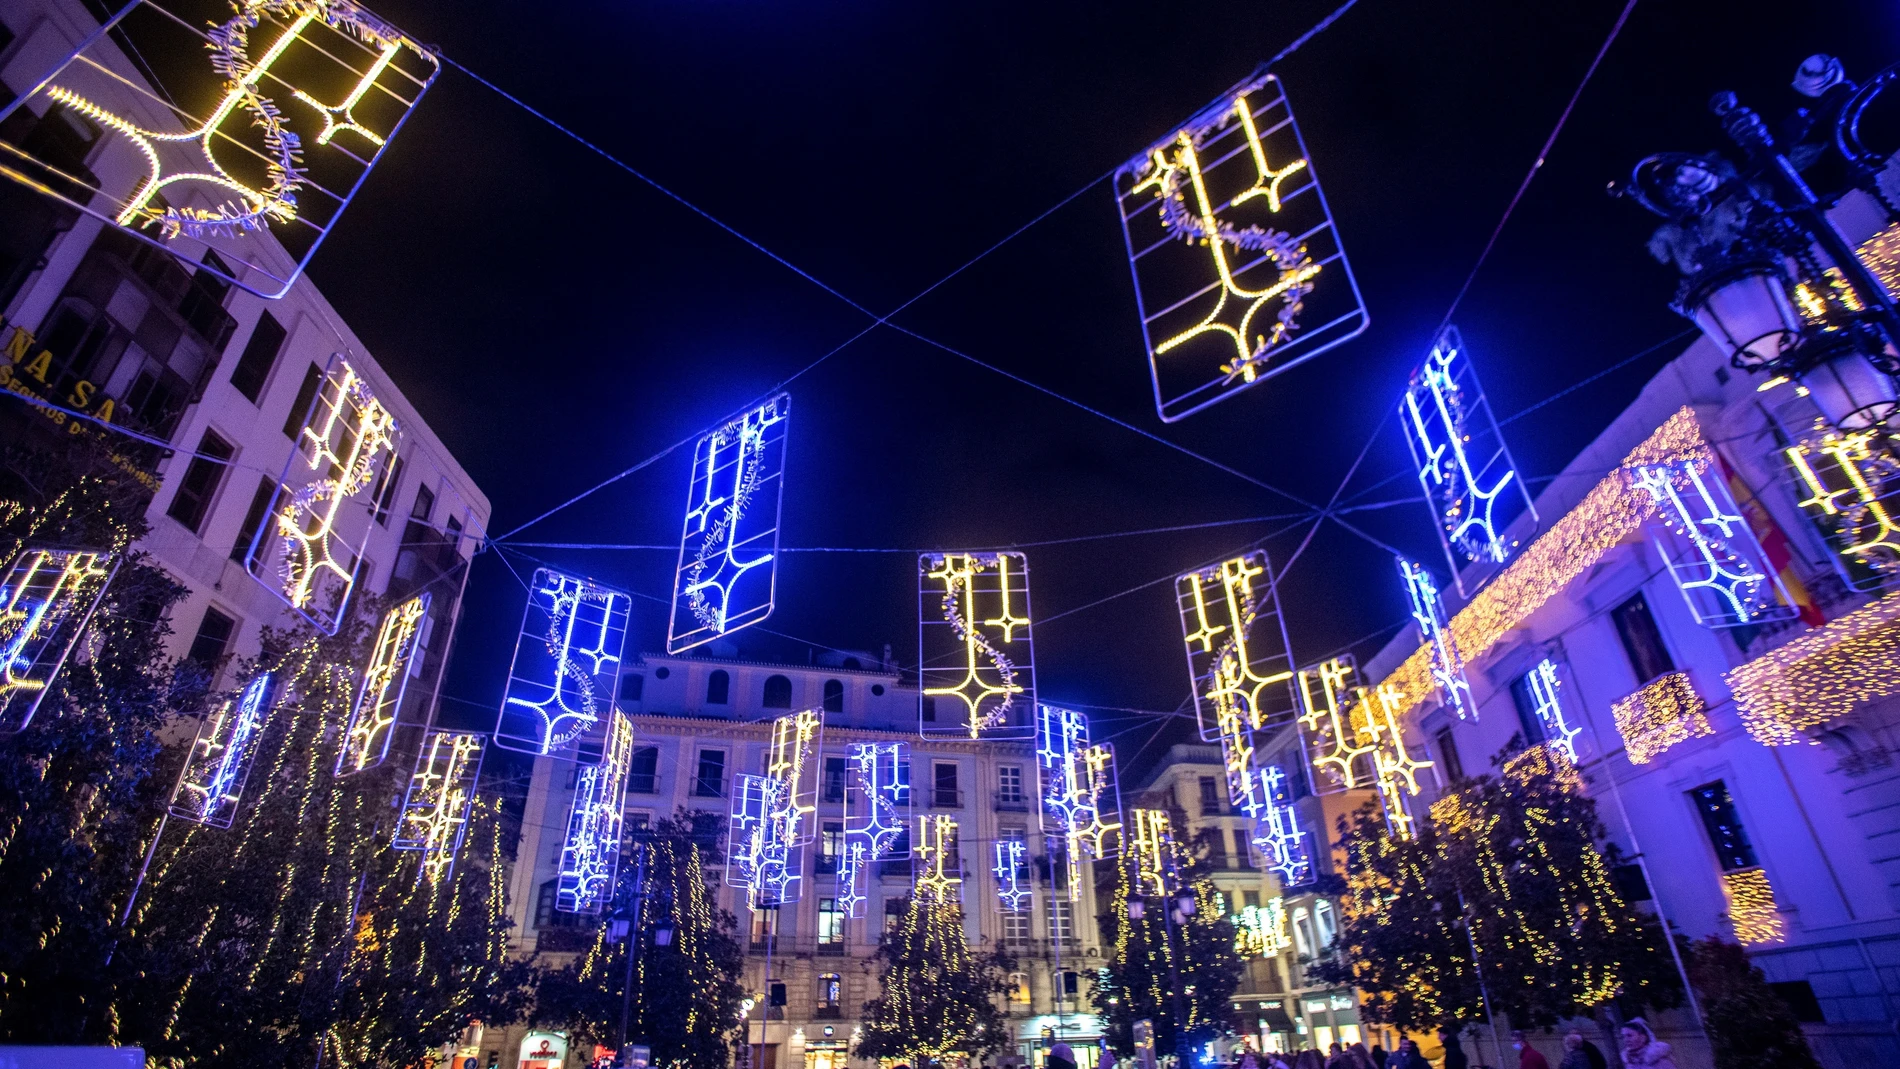 Iluminación navideña instalada en una céntrica plaza de Granada, criticada por el partido político Vox al considerarlas "cruces invertidas". EFE/ Miguel Ángel Molina